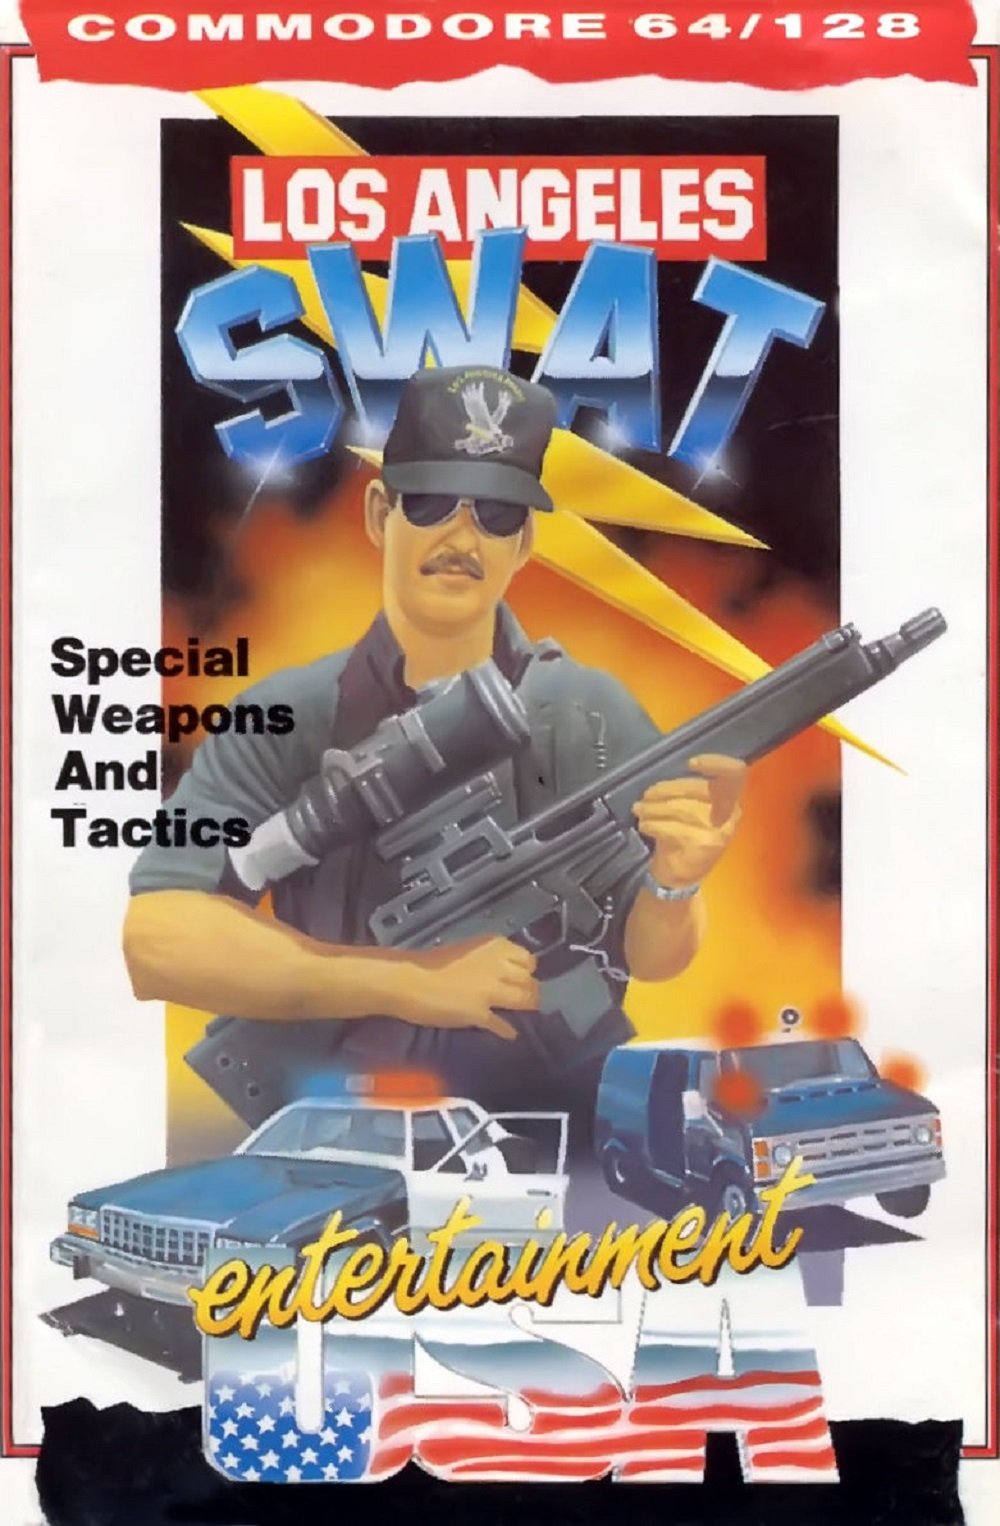 Image of Los Angeles SWAT